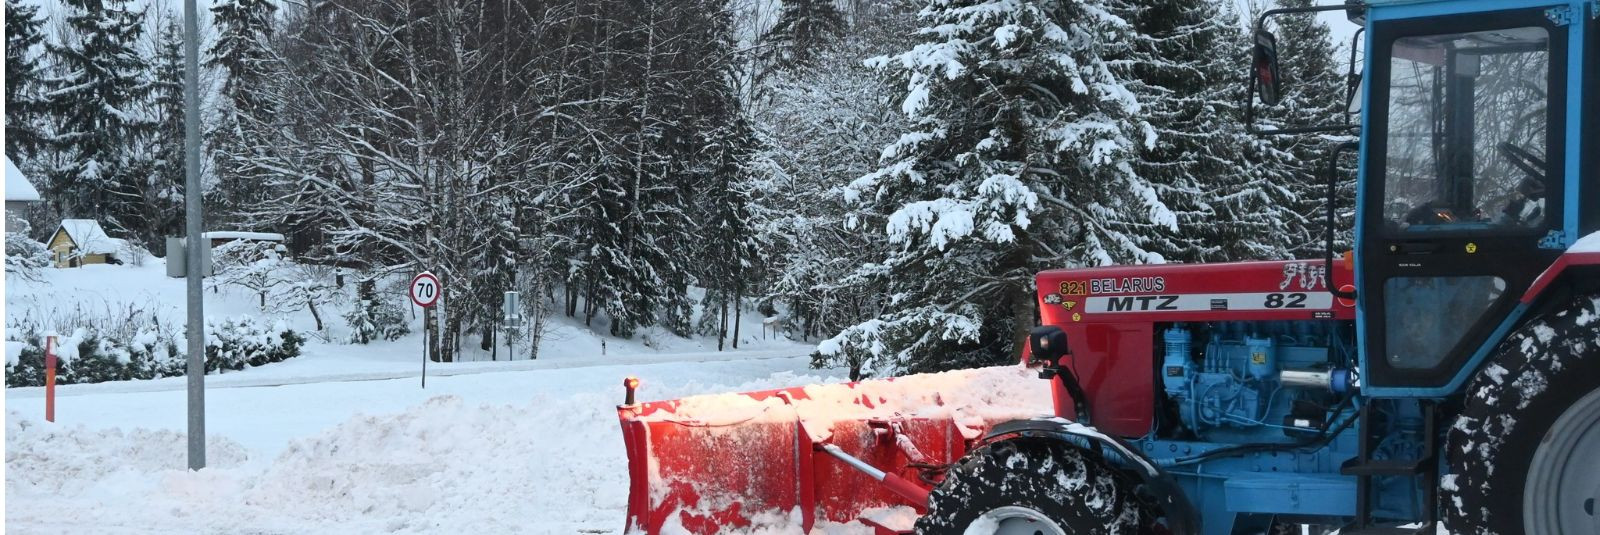 Kuigi praegu ei ole talv, on oluline olla informeeritud ja teadlik lumekoristusteenustest, mida pakutakse Põlva vallas. See informatiivne artikkel annab ülevaat